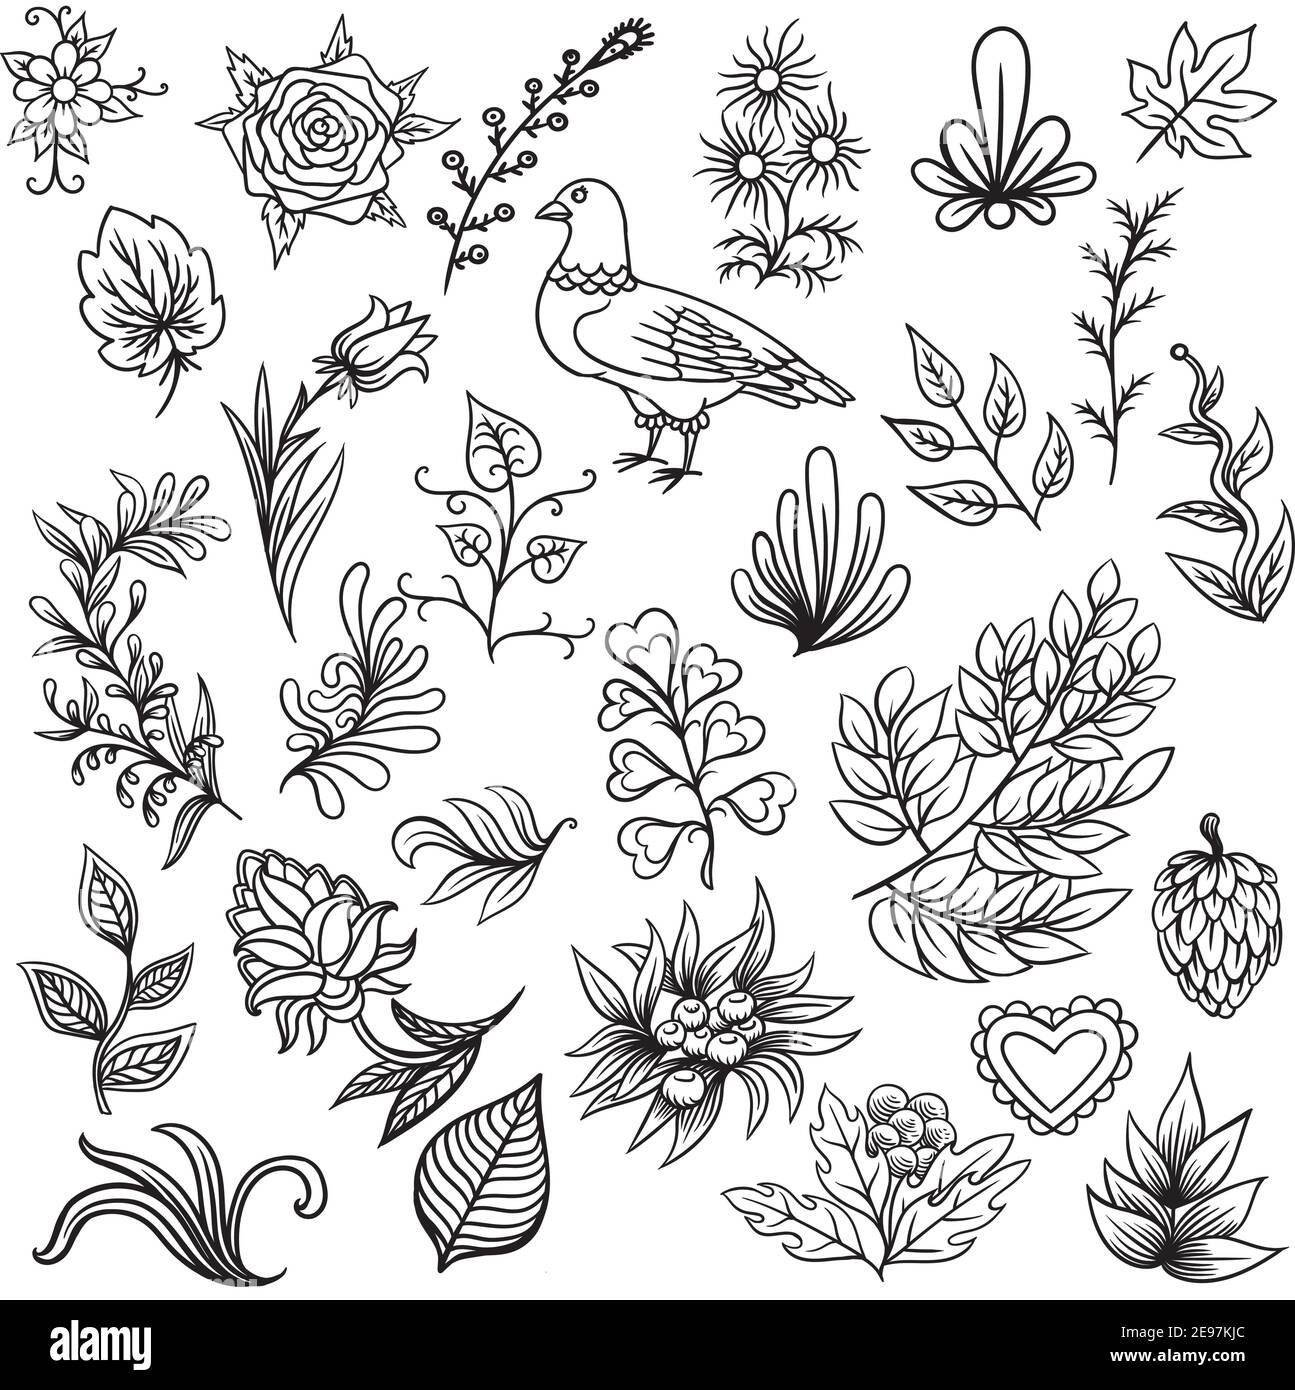 Patrón dibujado a mano con elementos abstractos de la naturaleza escandinava. Vector conjunto de plantas y animales. Ilustración del Vector